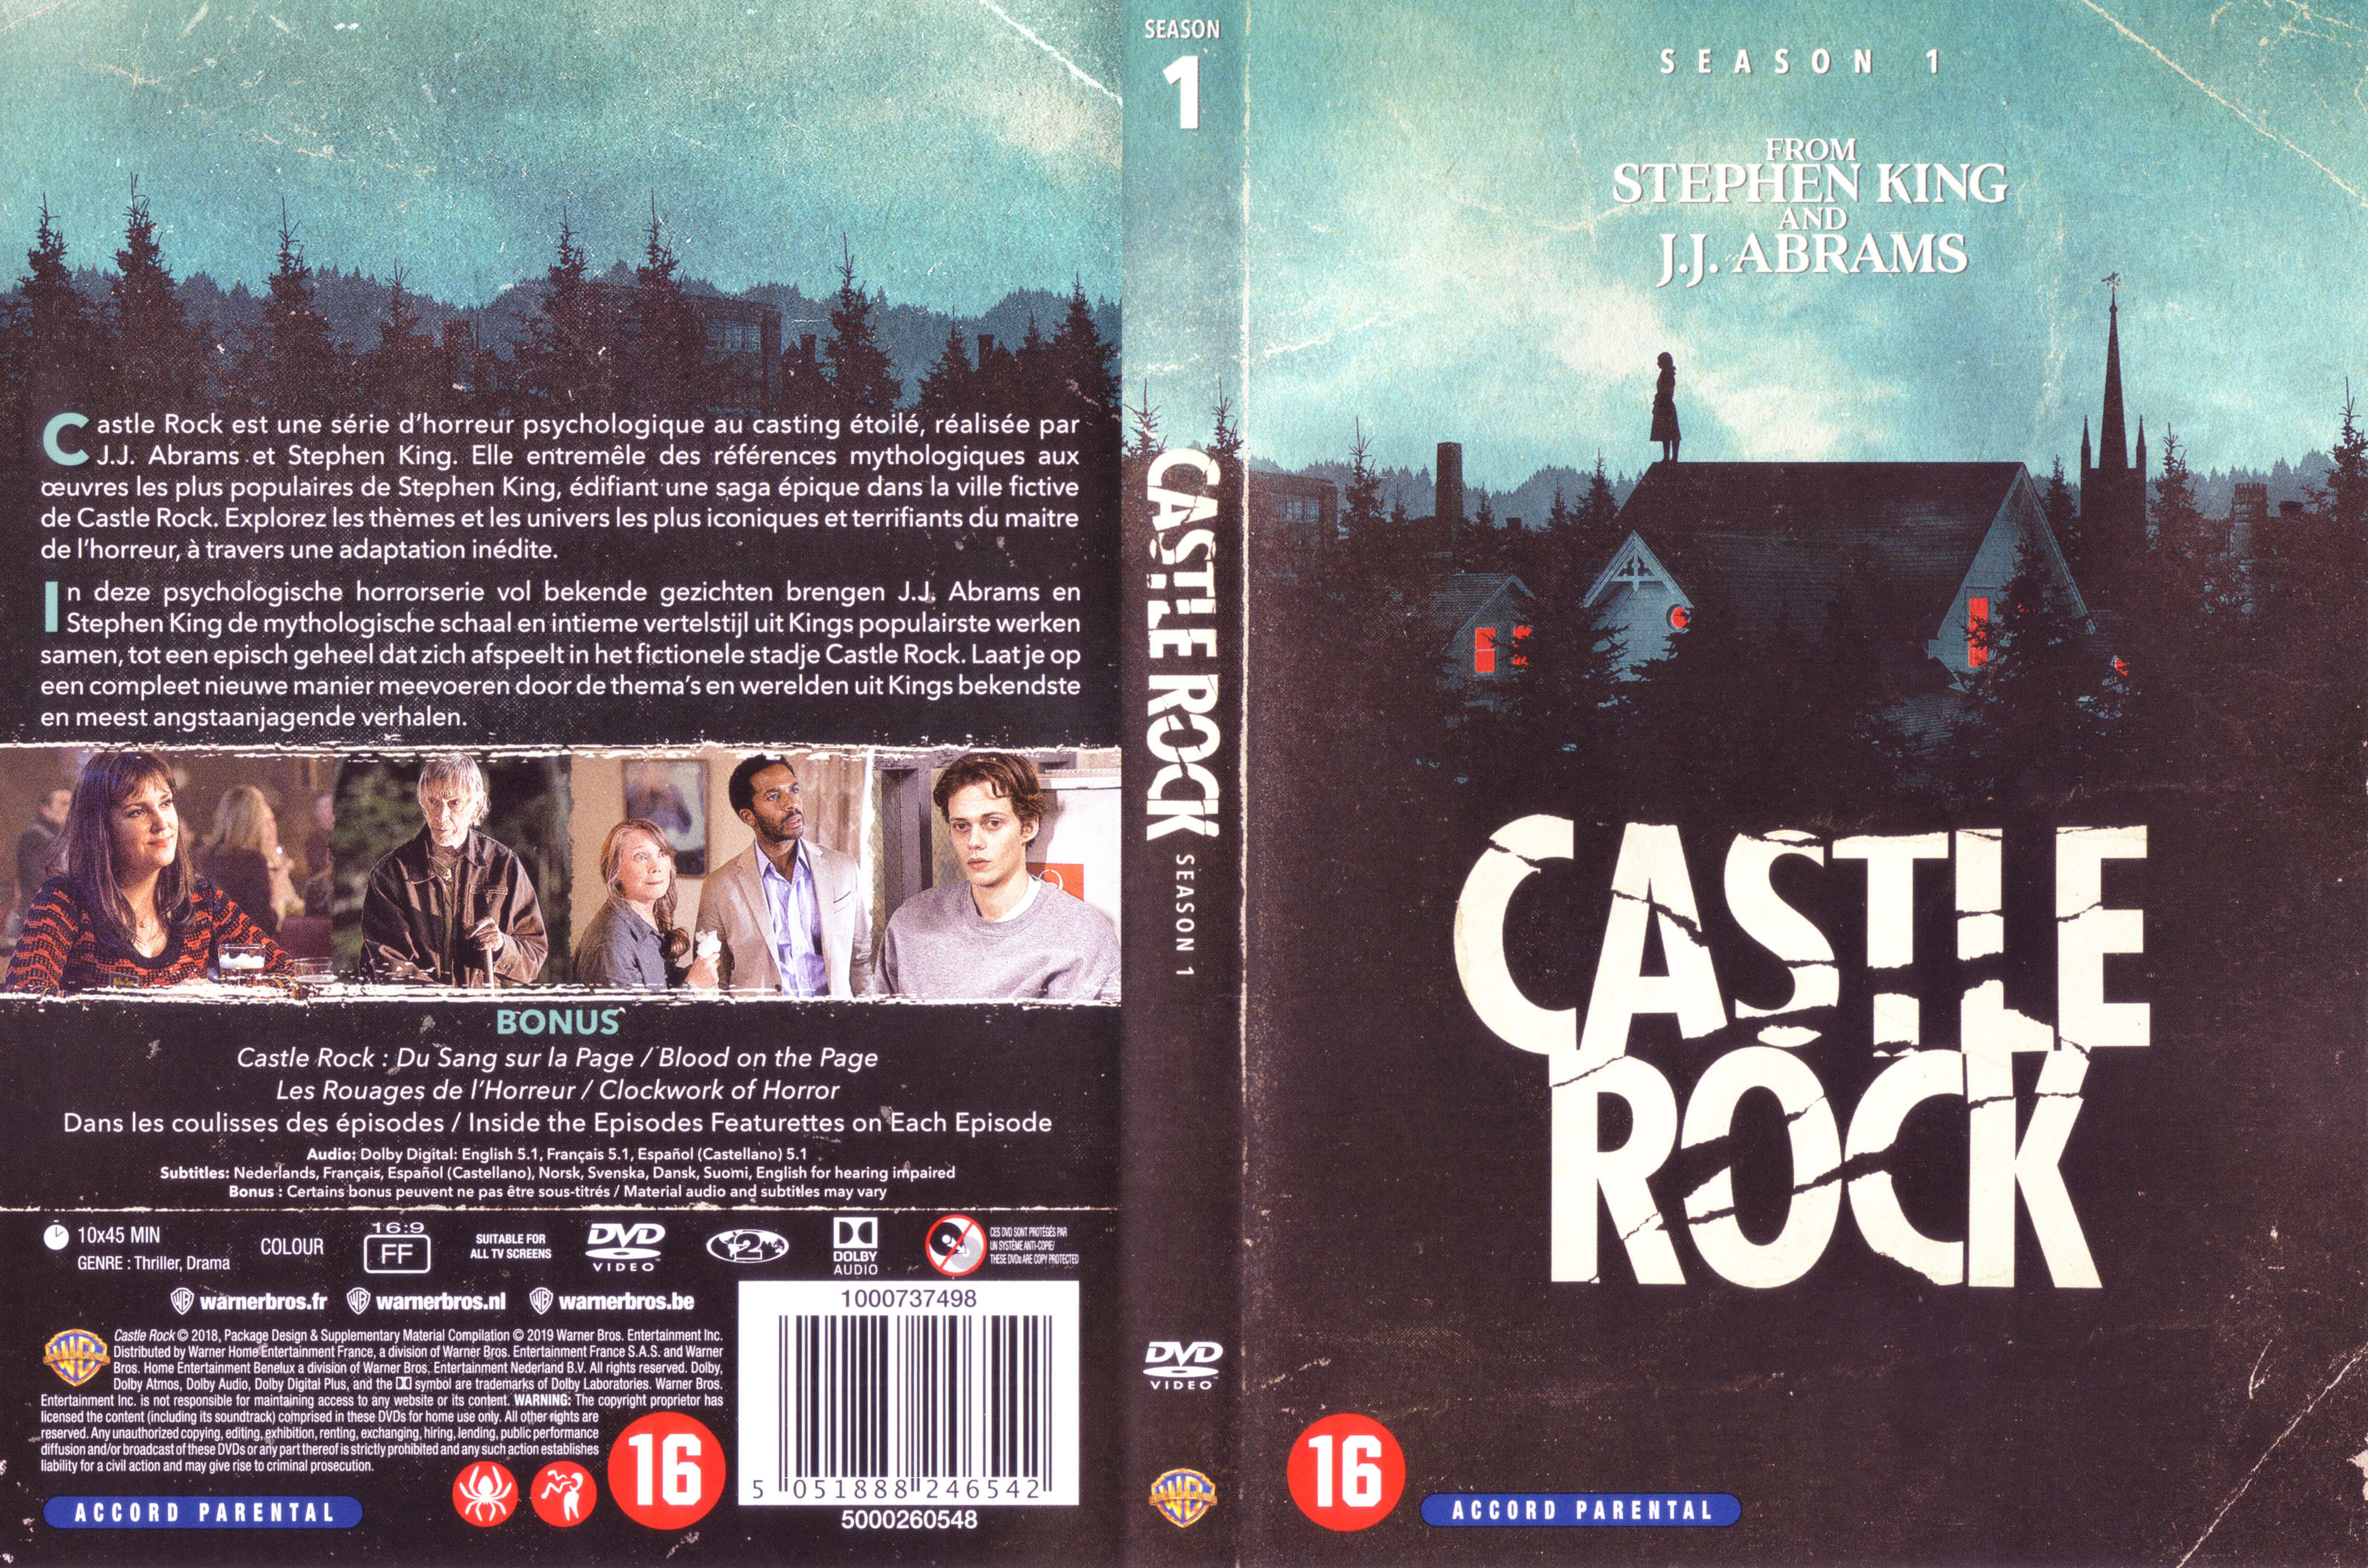 Jaquette DVD Castle Rock saison 1